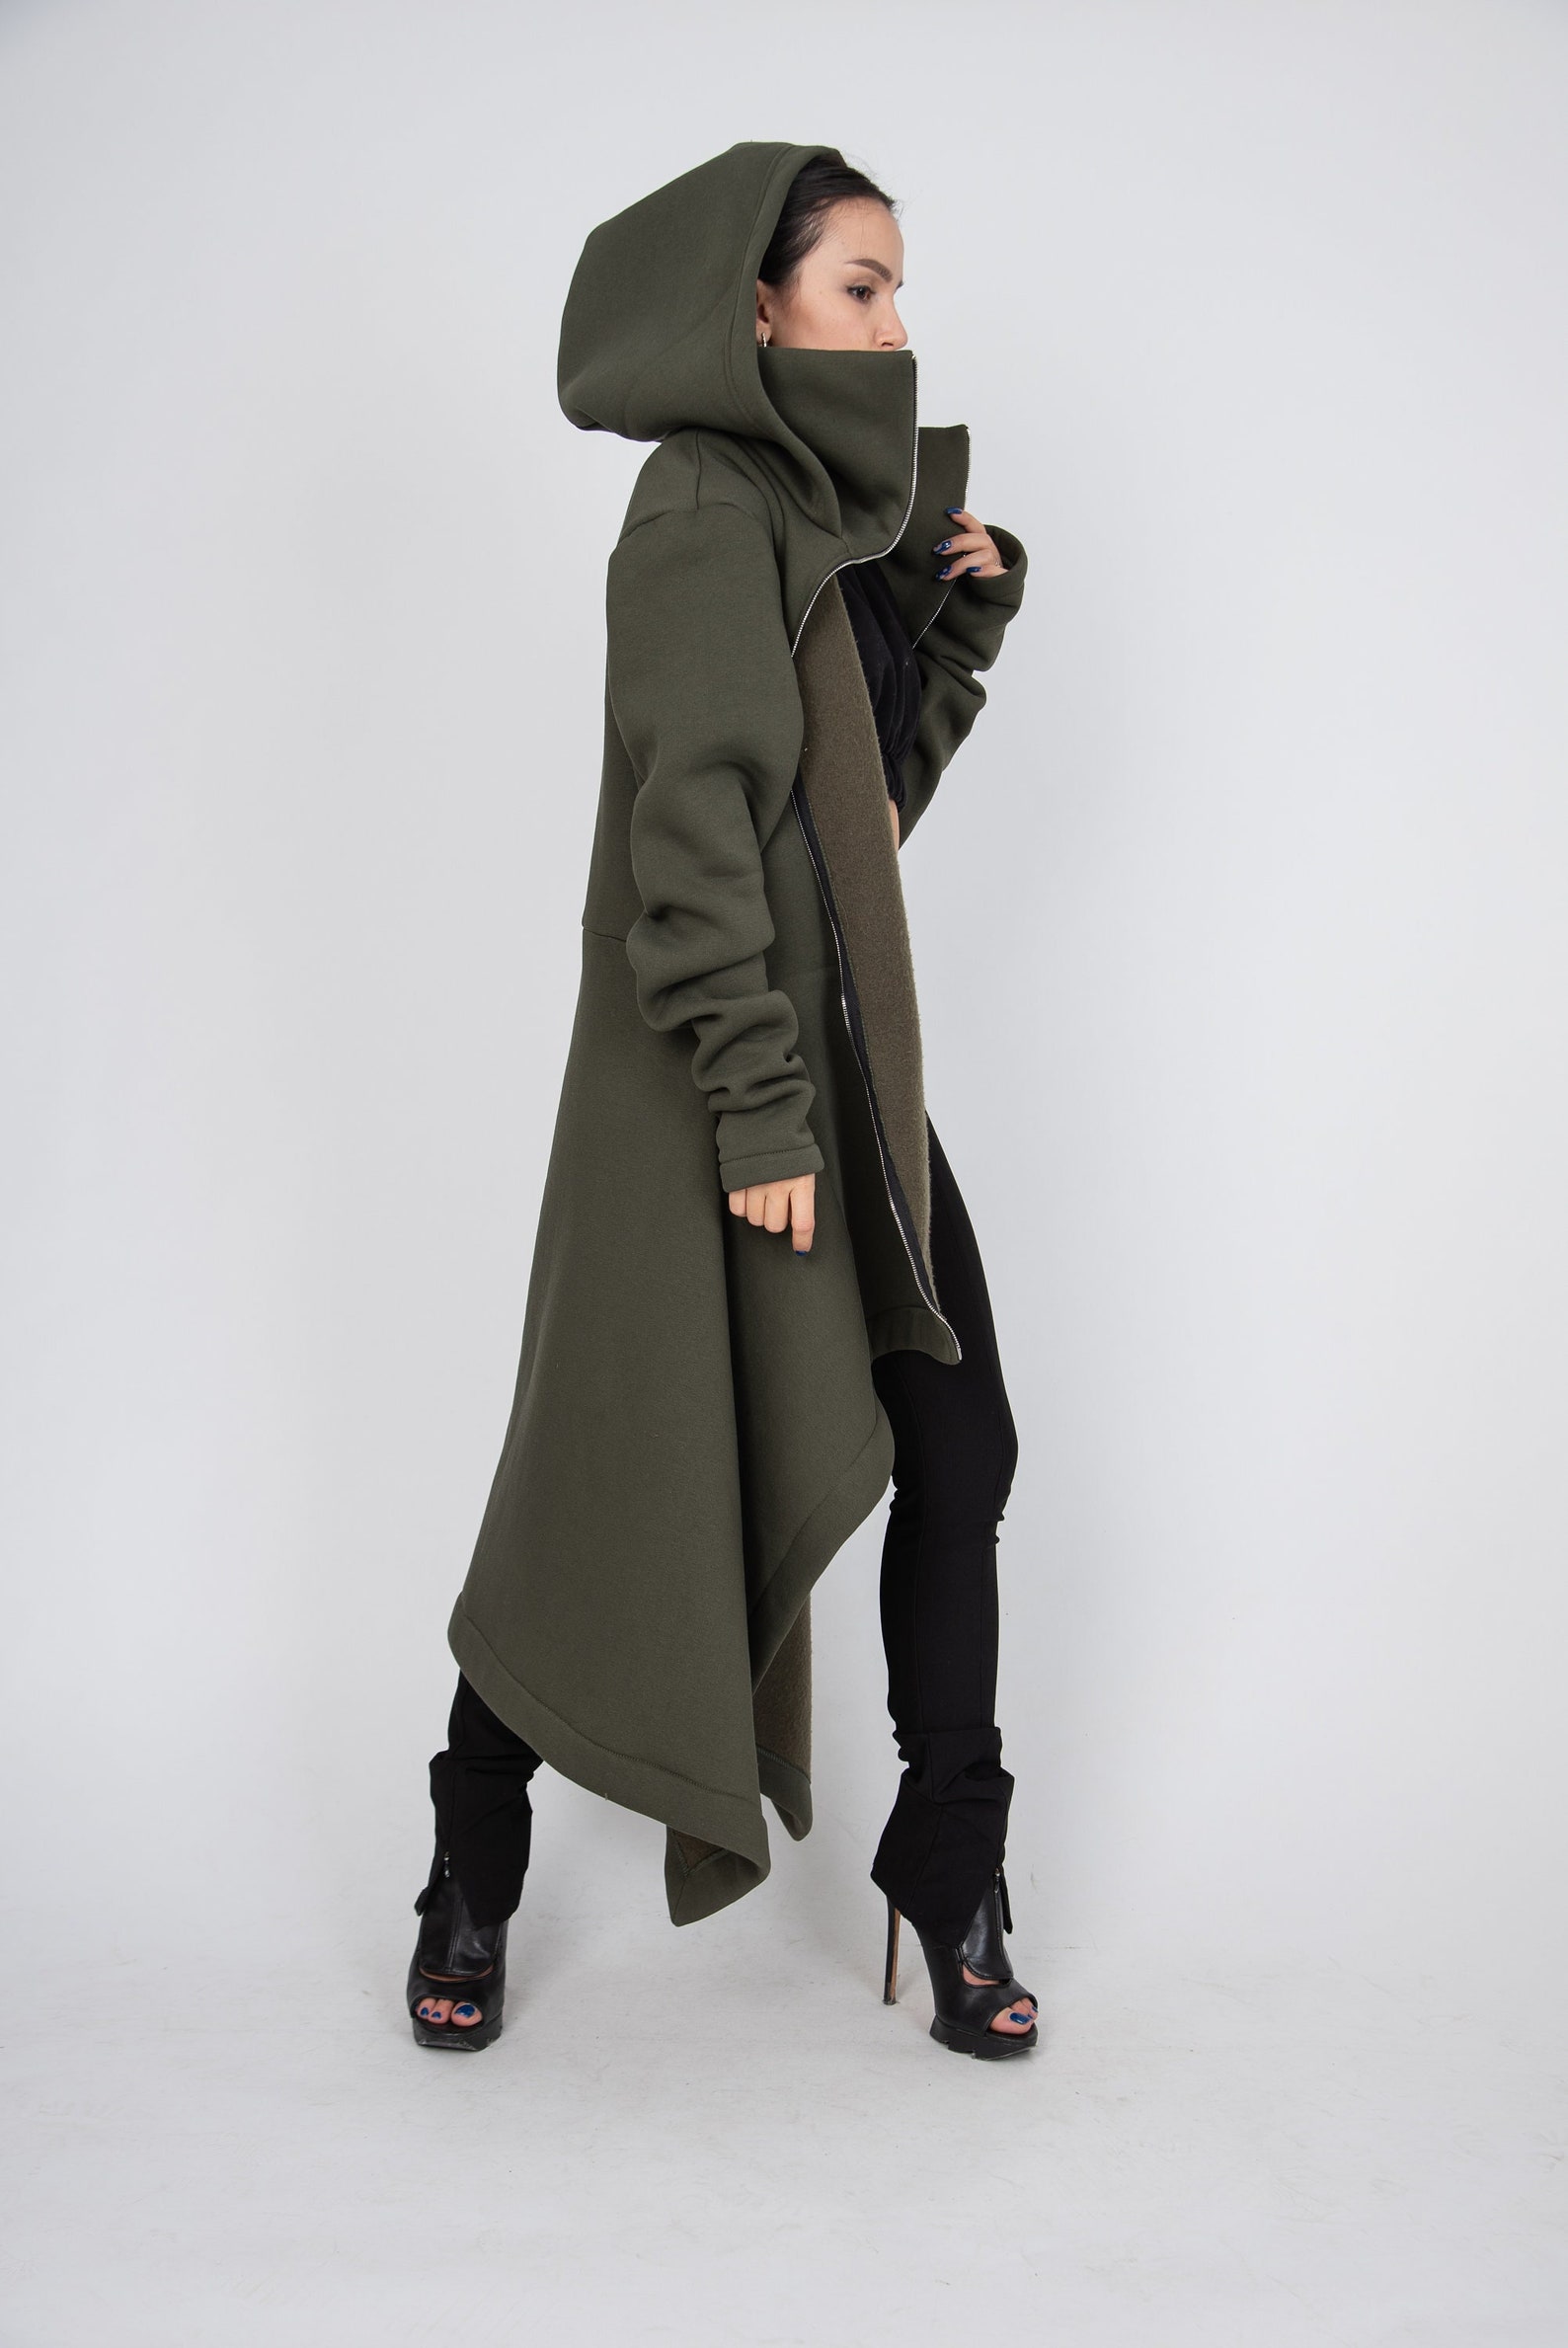 Cotton Maxi Jacket/coat/blanket Coat/cute Oversized | Etsy